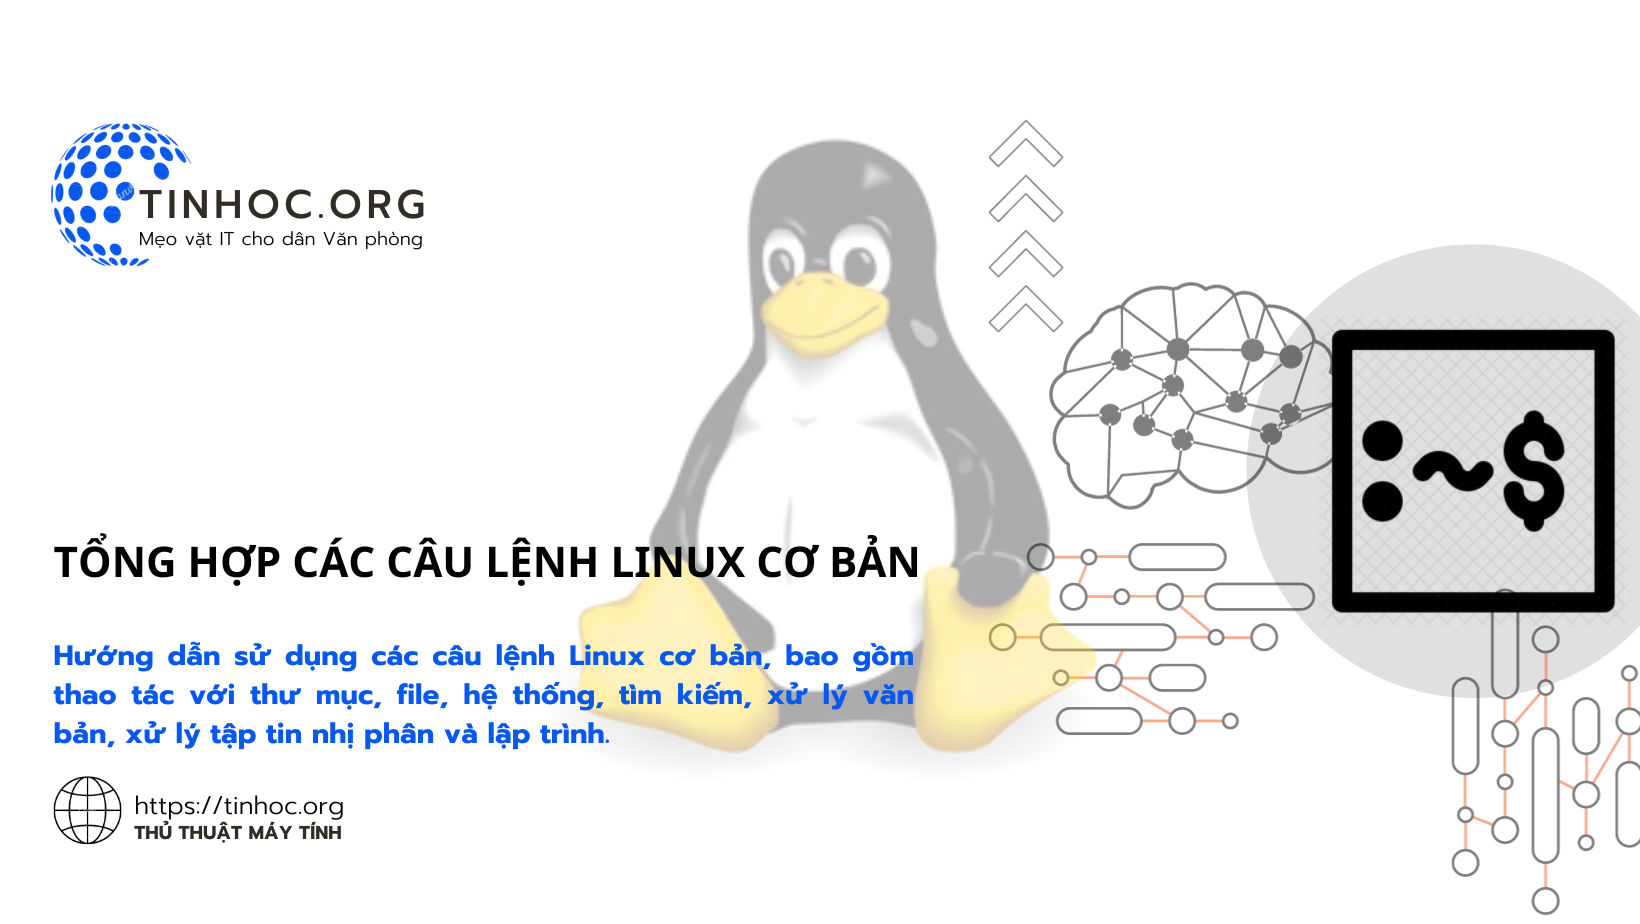 Tổng hợp các câu lệnh Linux cơ bản